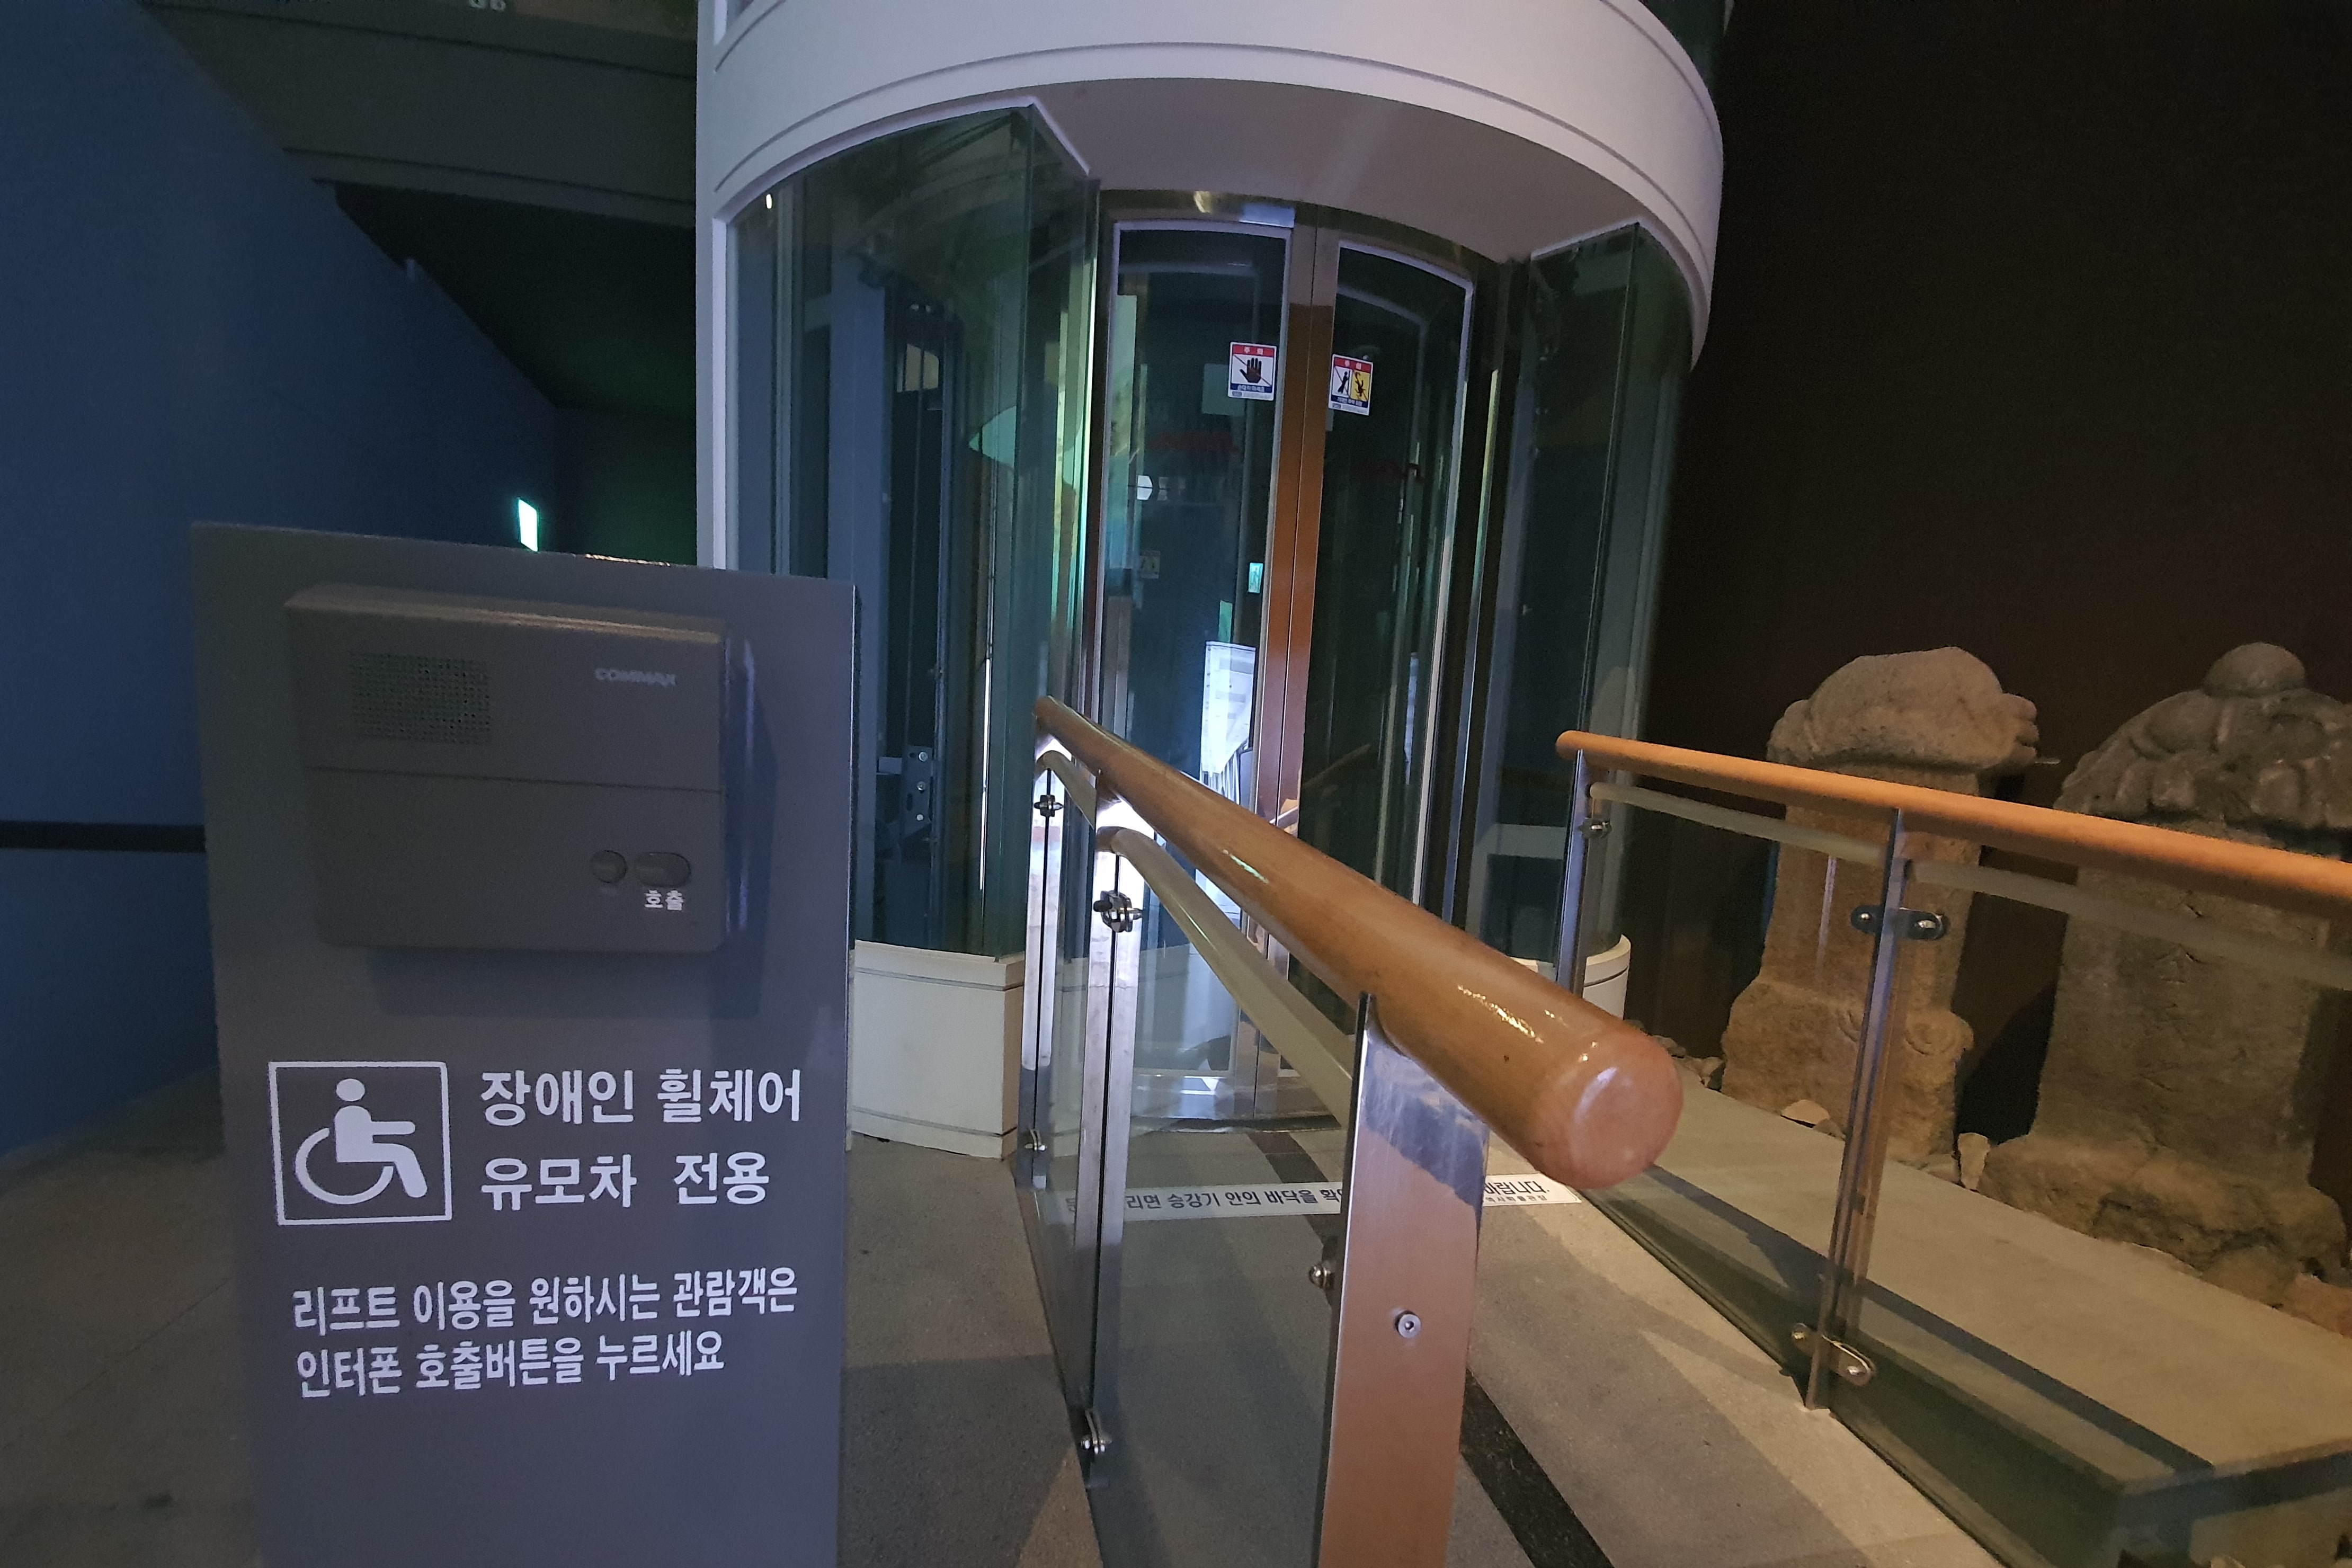 엘리베이터0 : 서울역사박물관 장애인 휠체어와 유모차 전용 엘리베이터 외부 전경